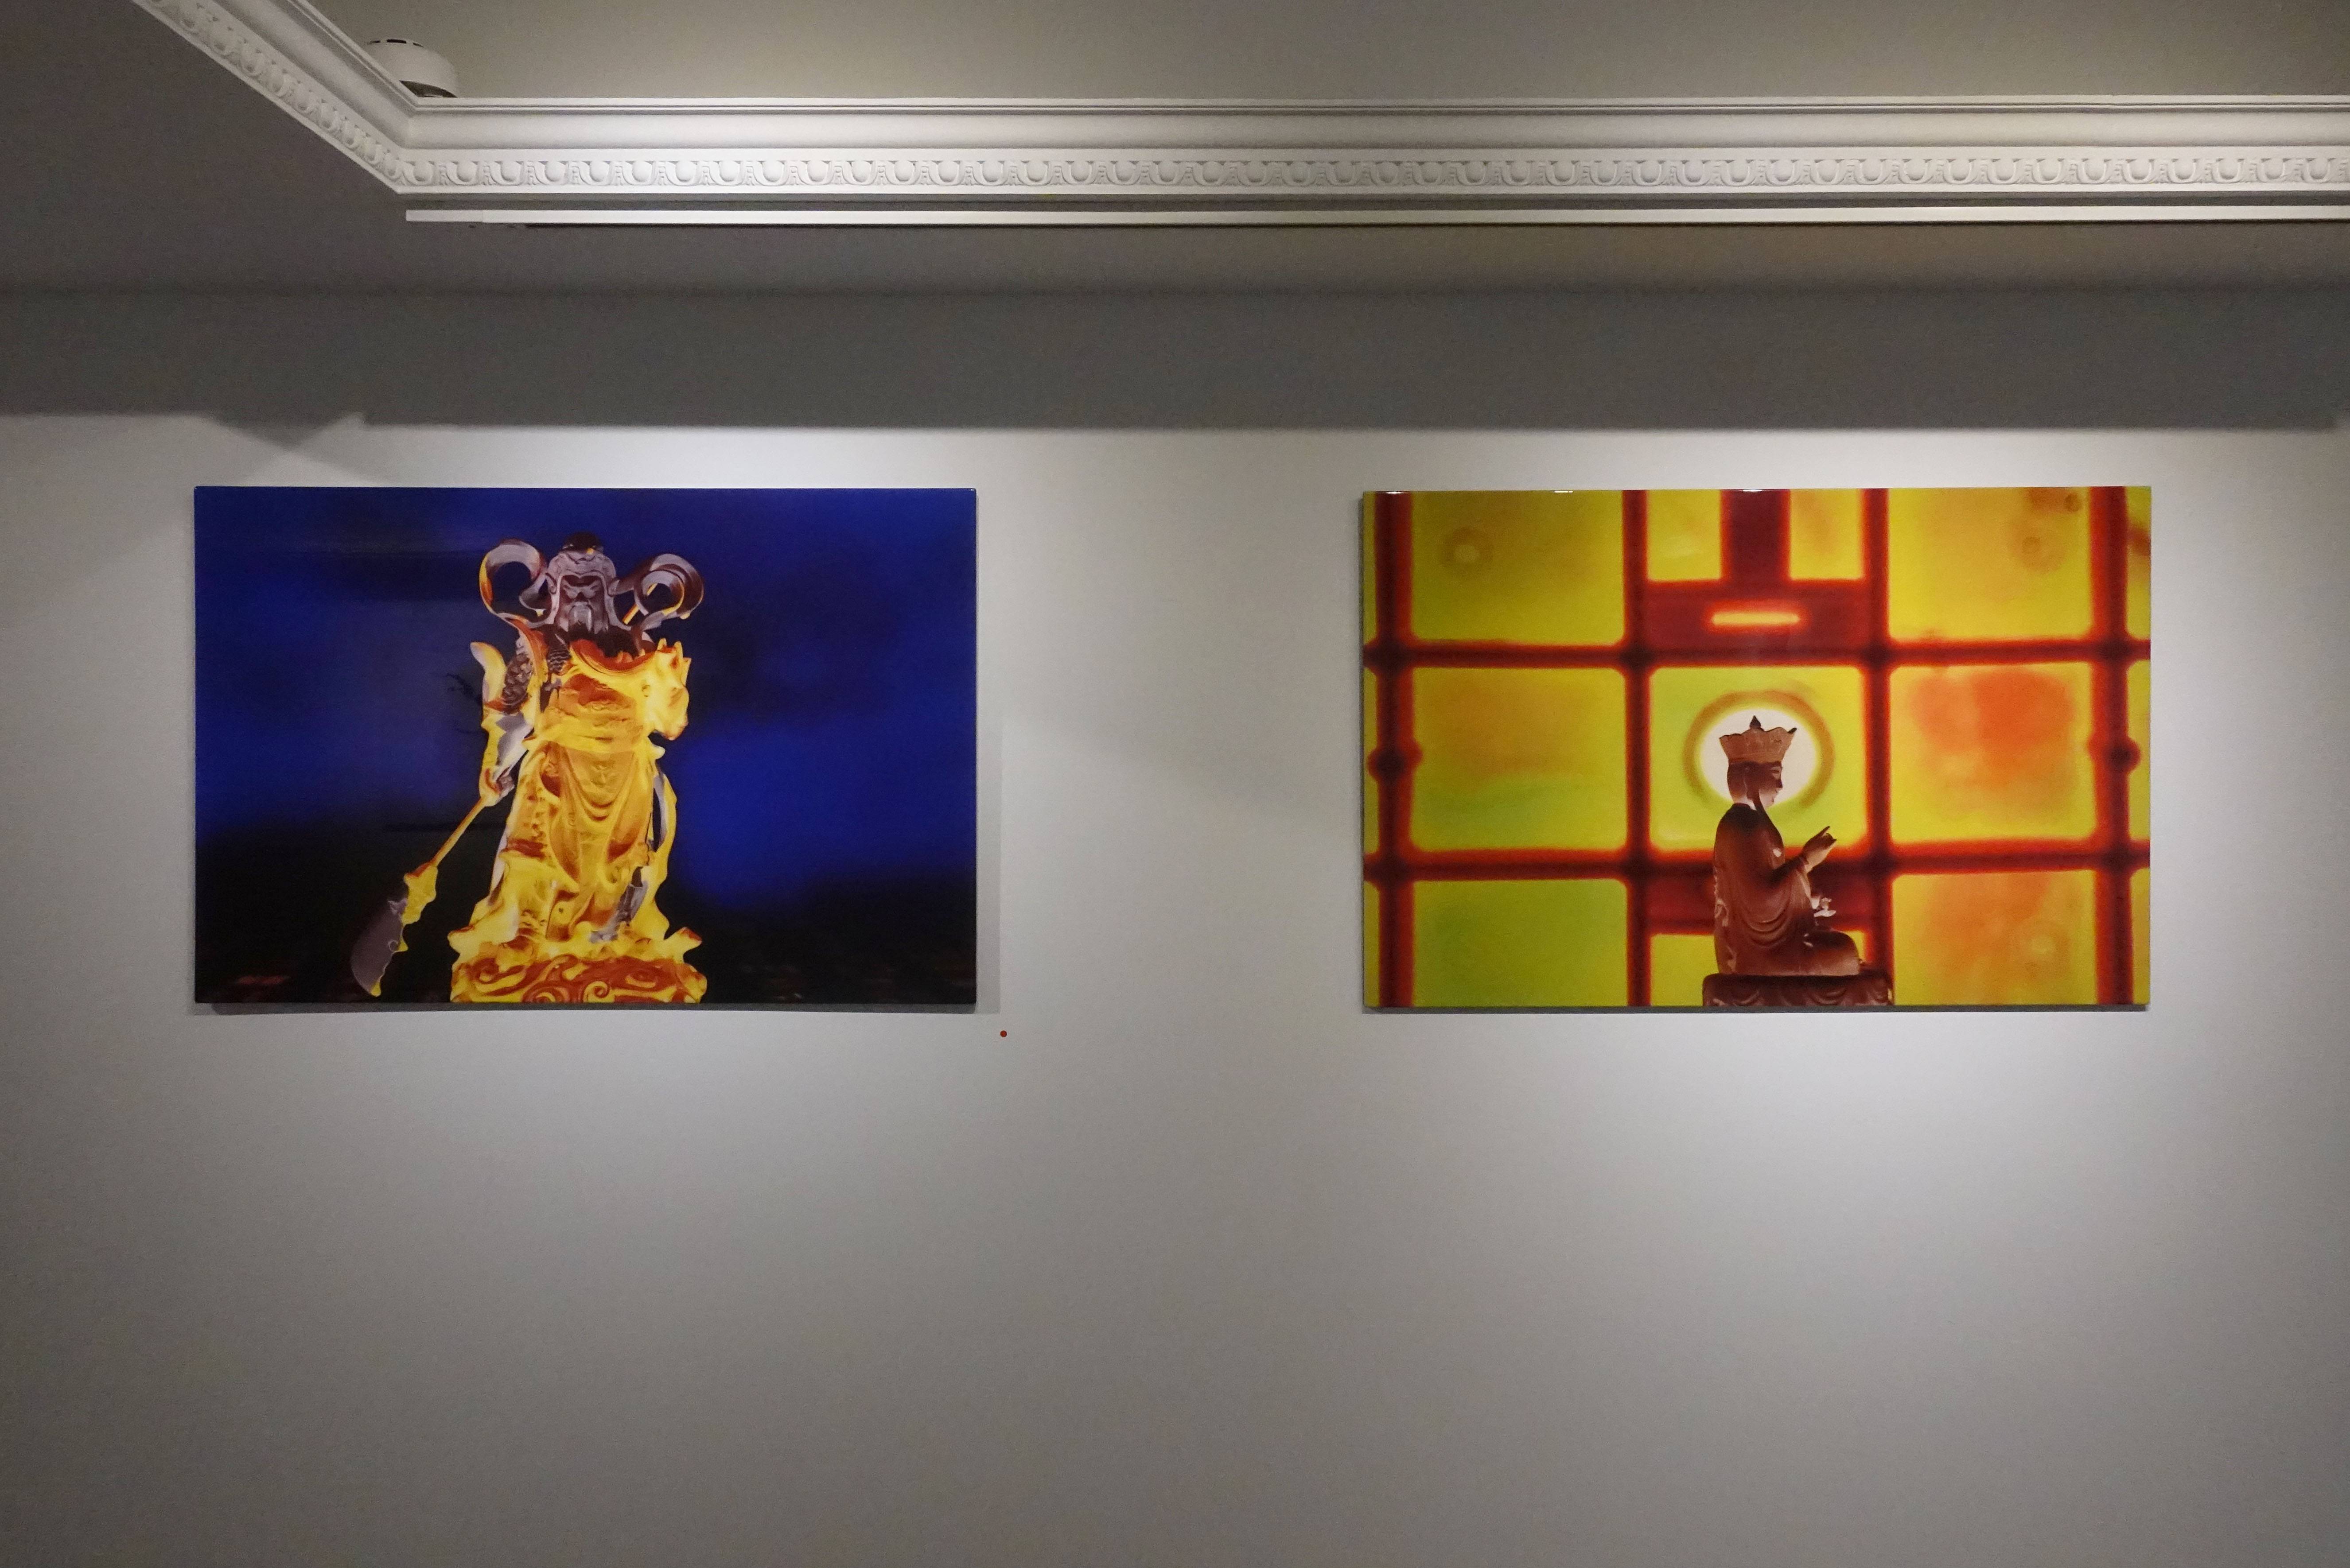 卡佑民攝影作品於亞億藝術空間展出。